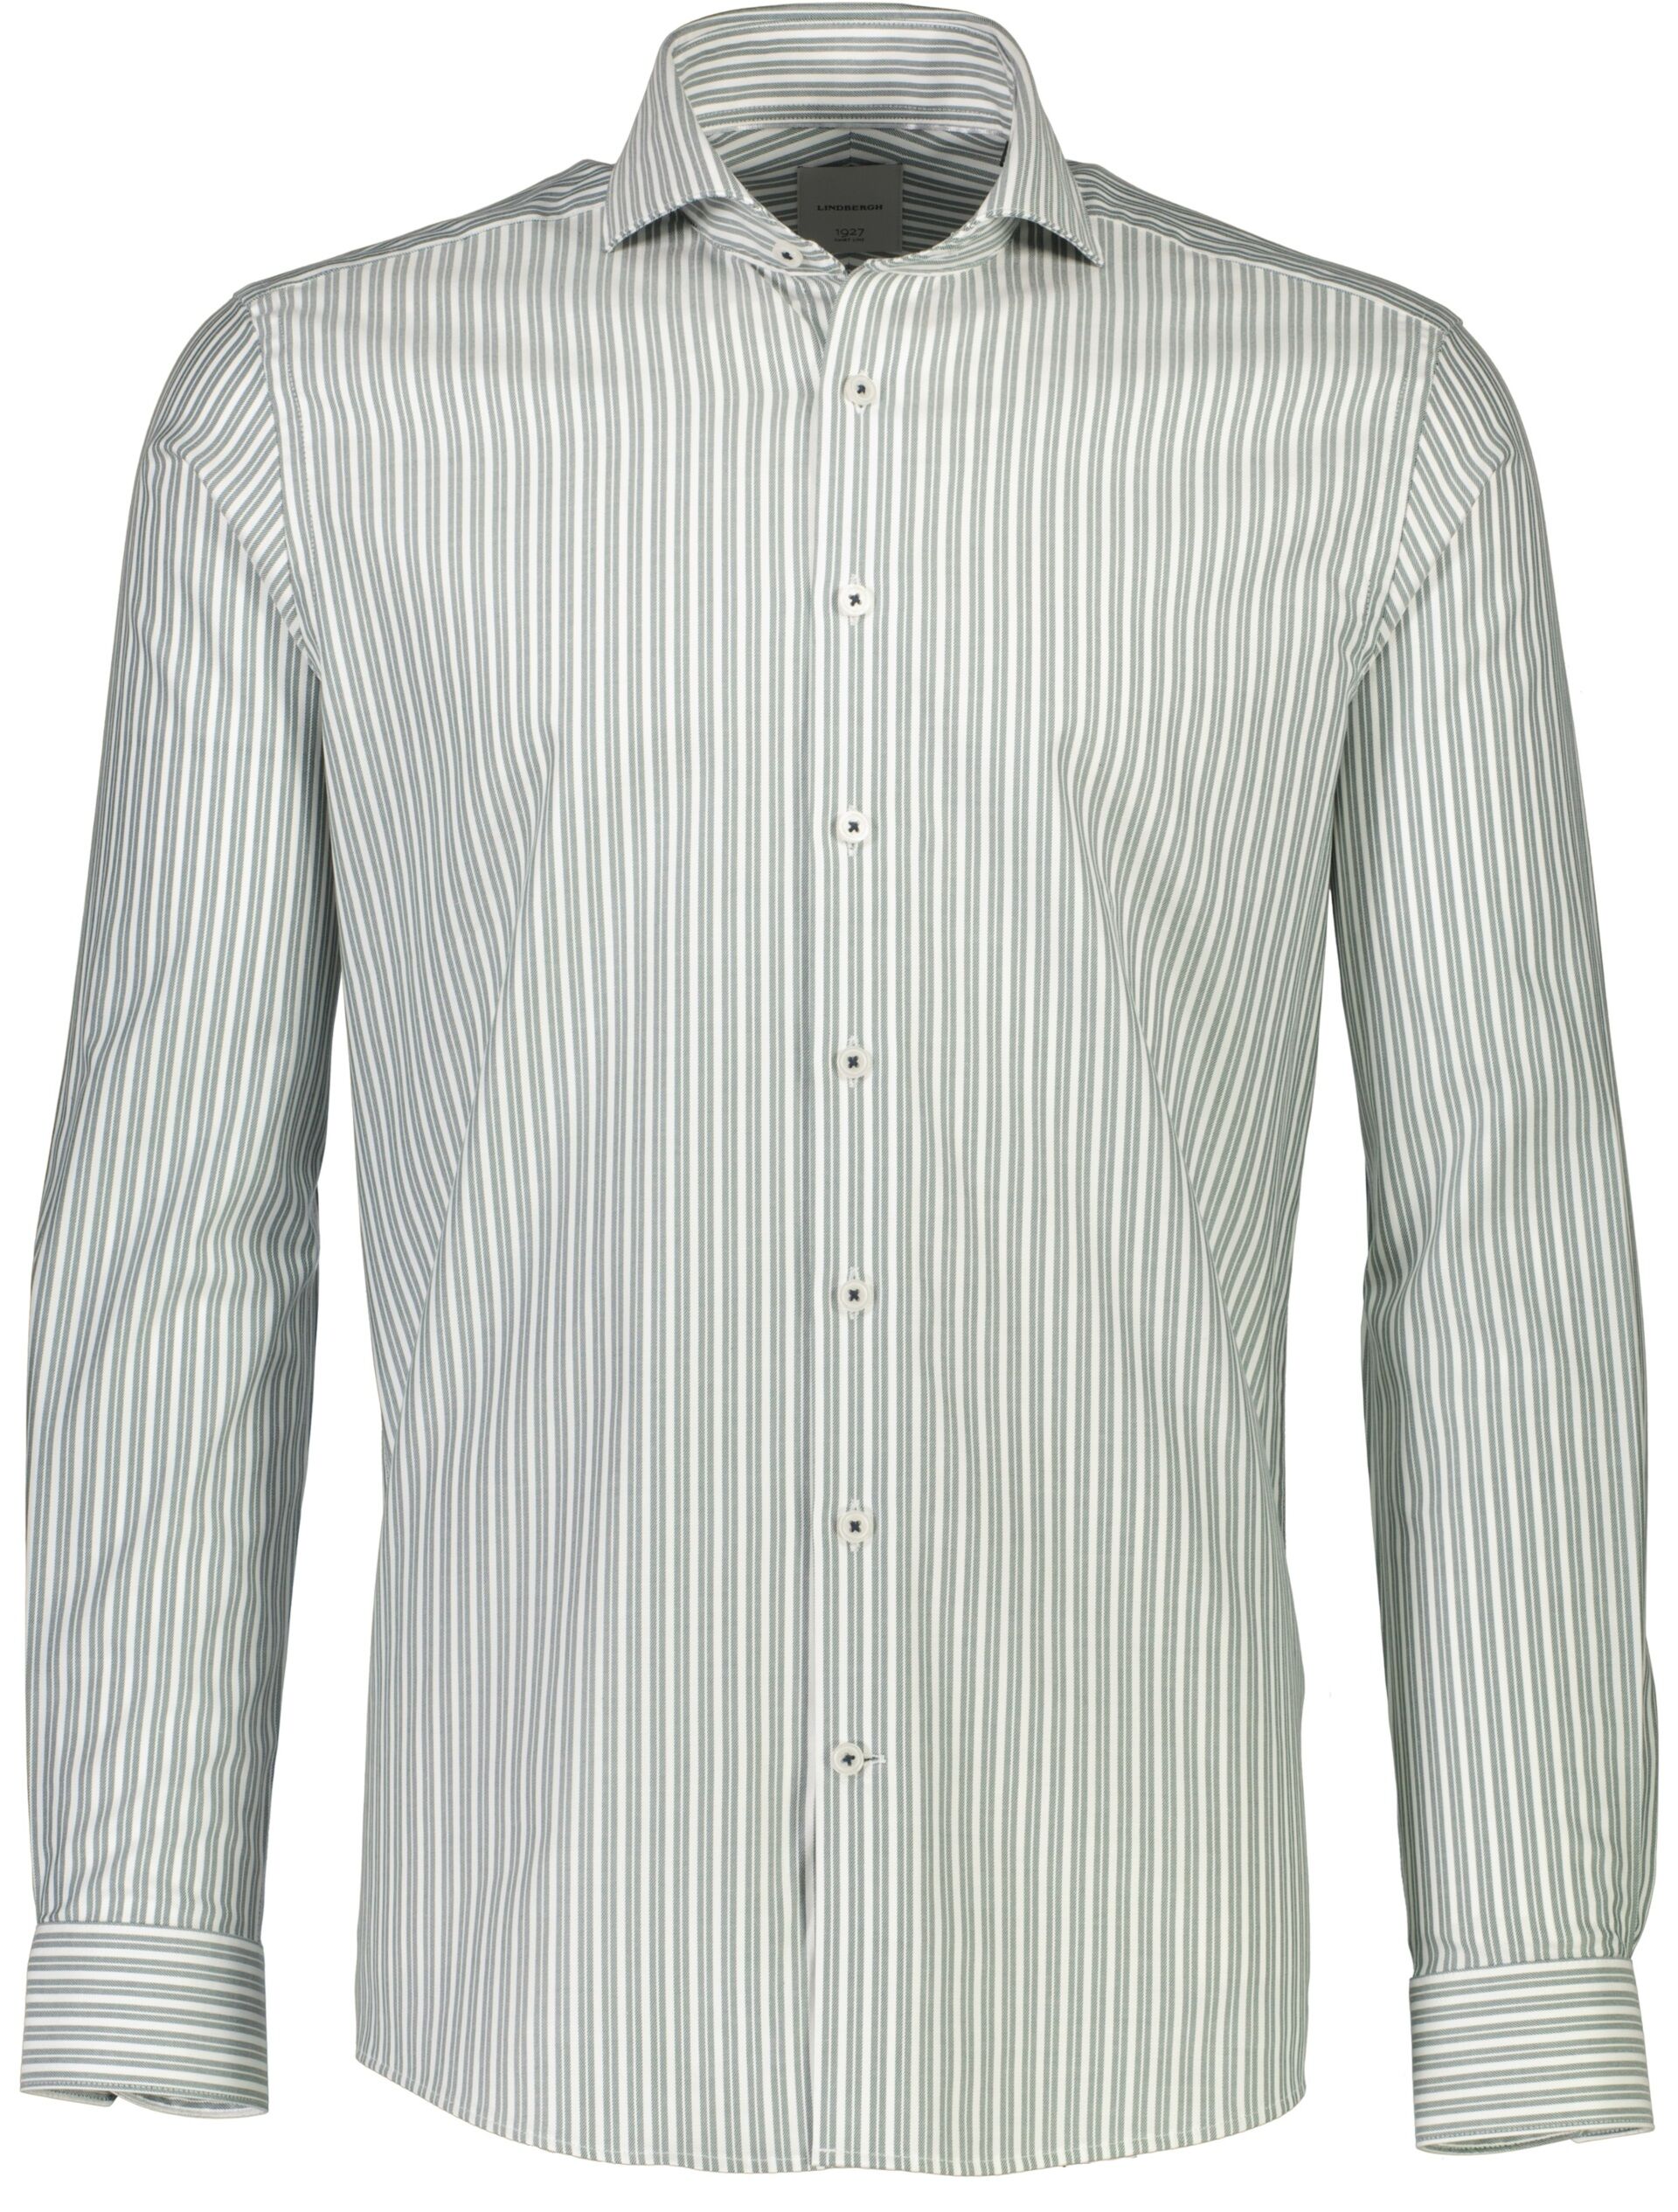 1927 Business shirt 30-247310